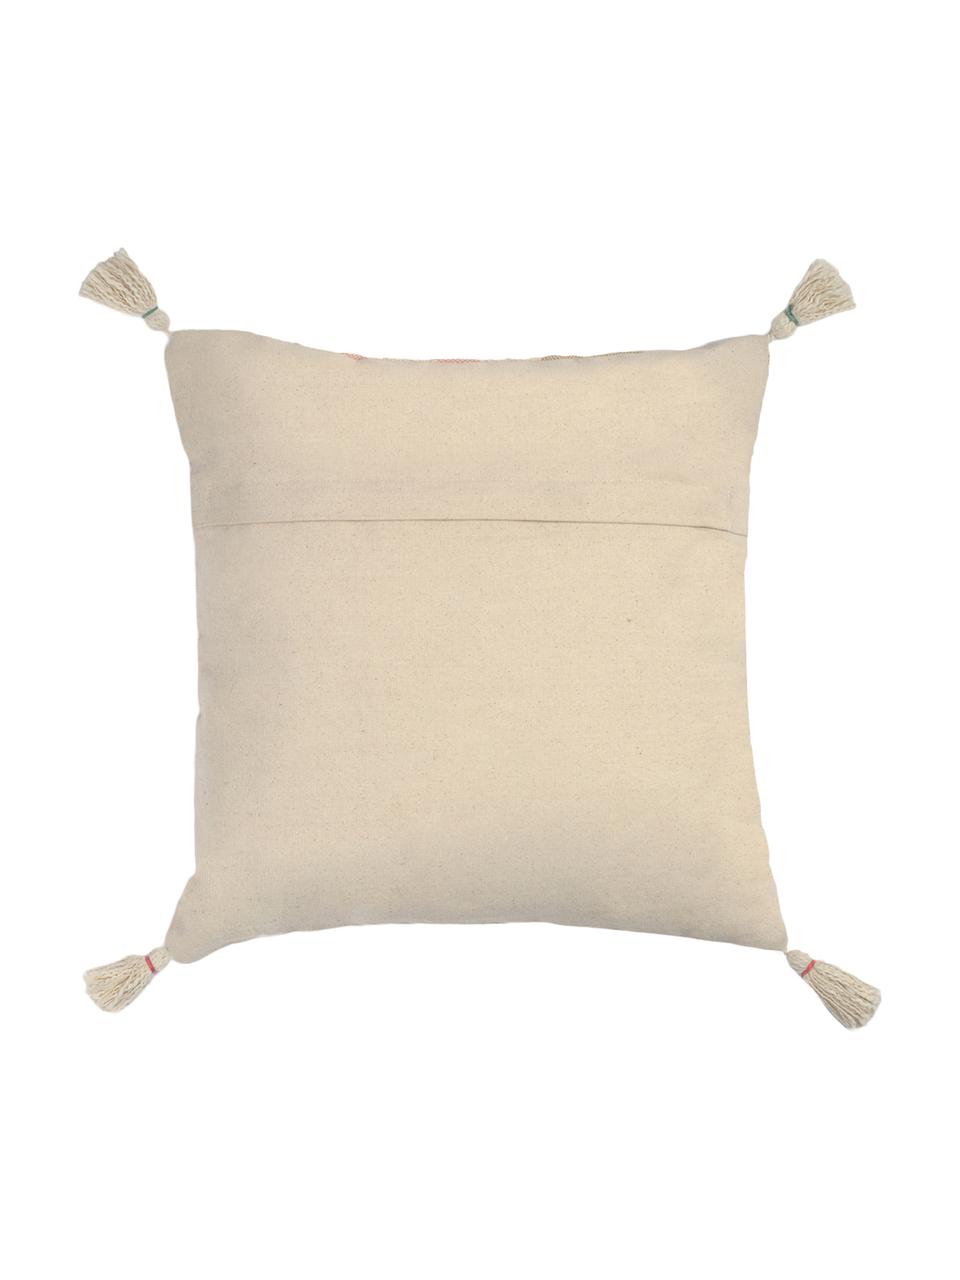 Kissenhülle Vals mit Tasseln, 100% Baumwolle, Mehrfarbig, 45 x 45 cm